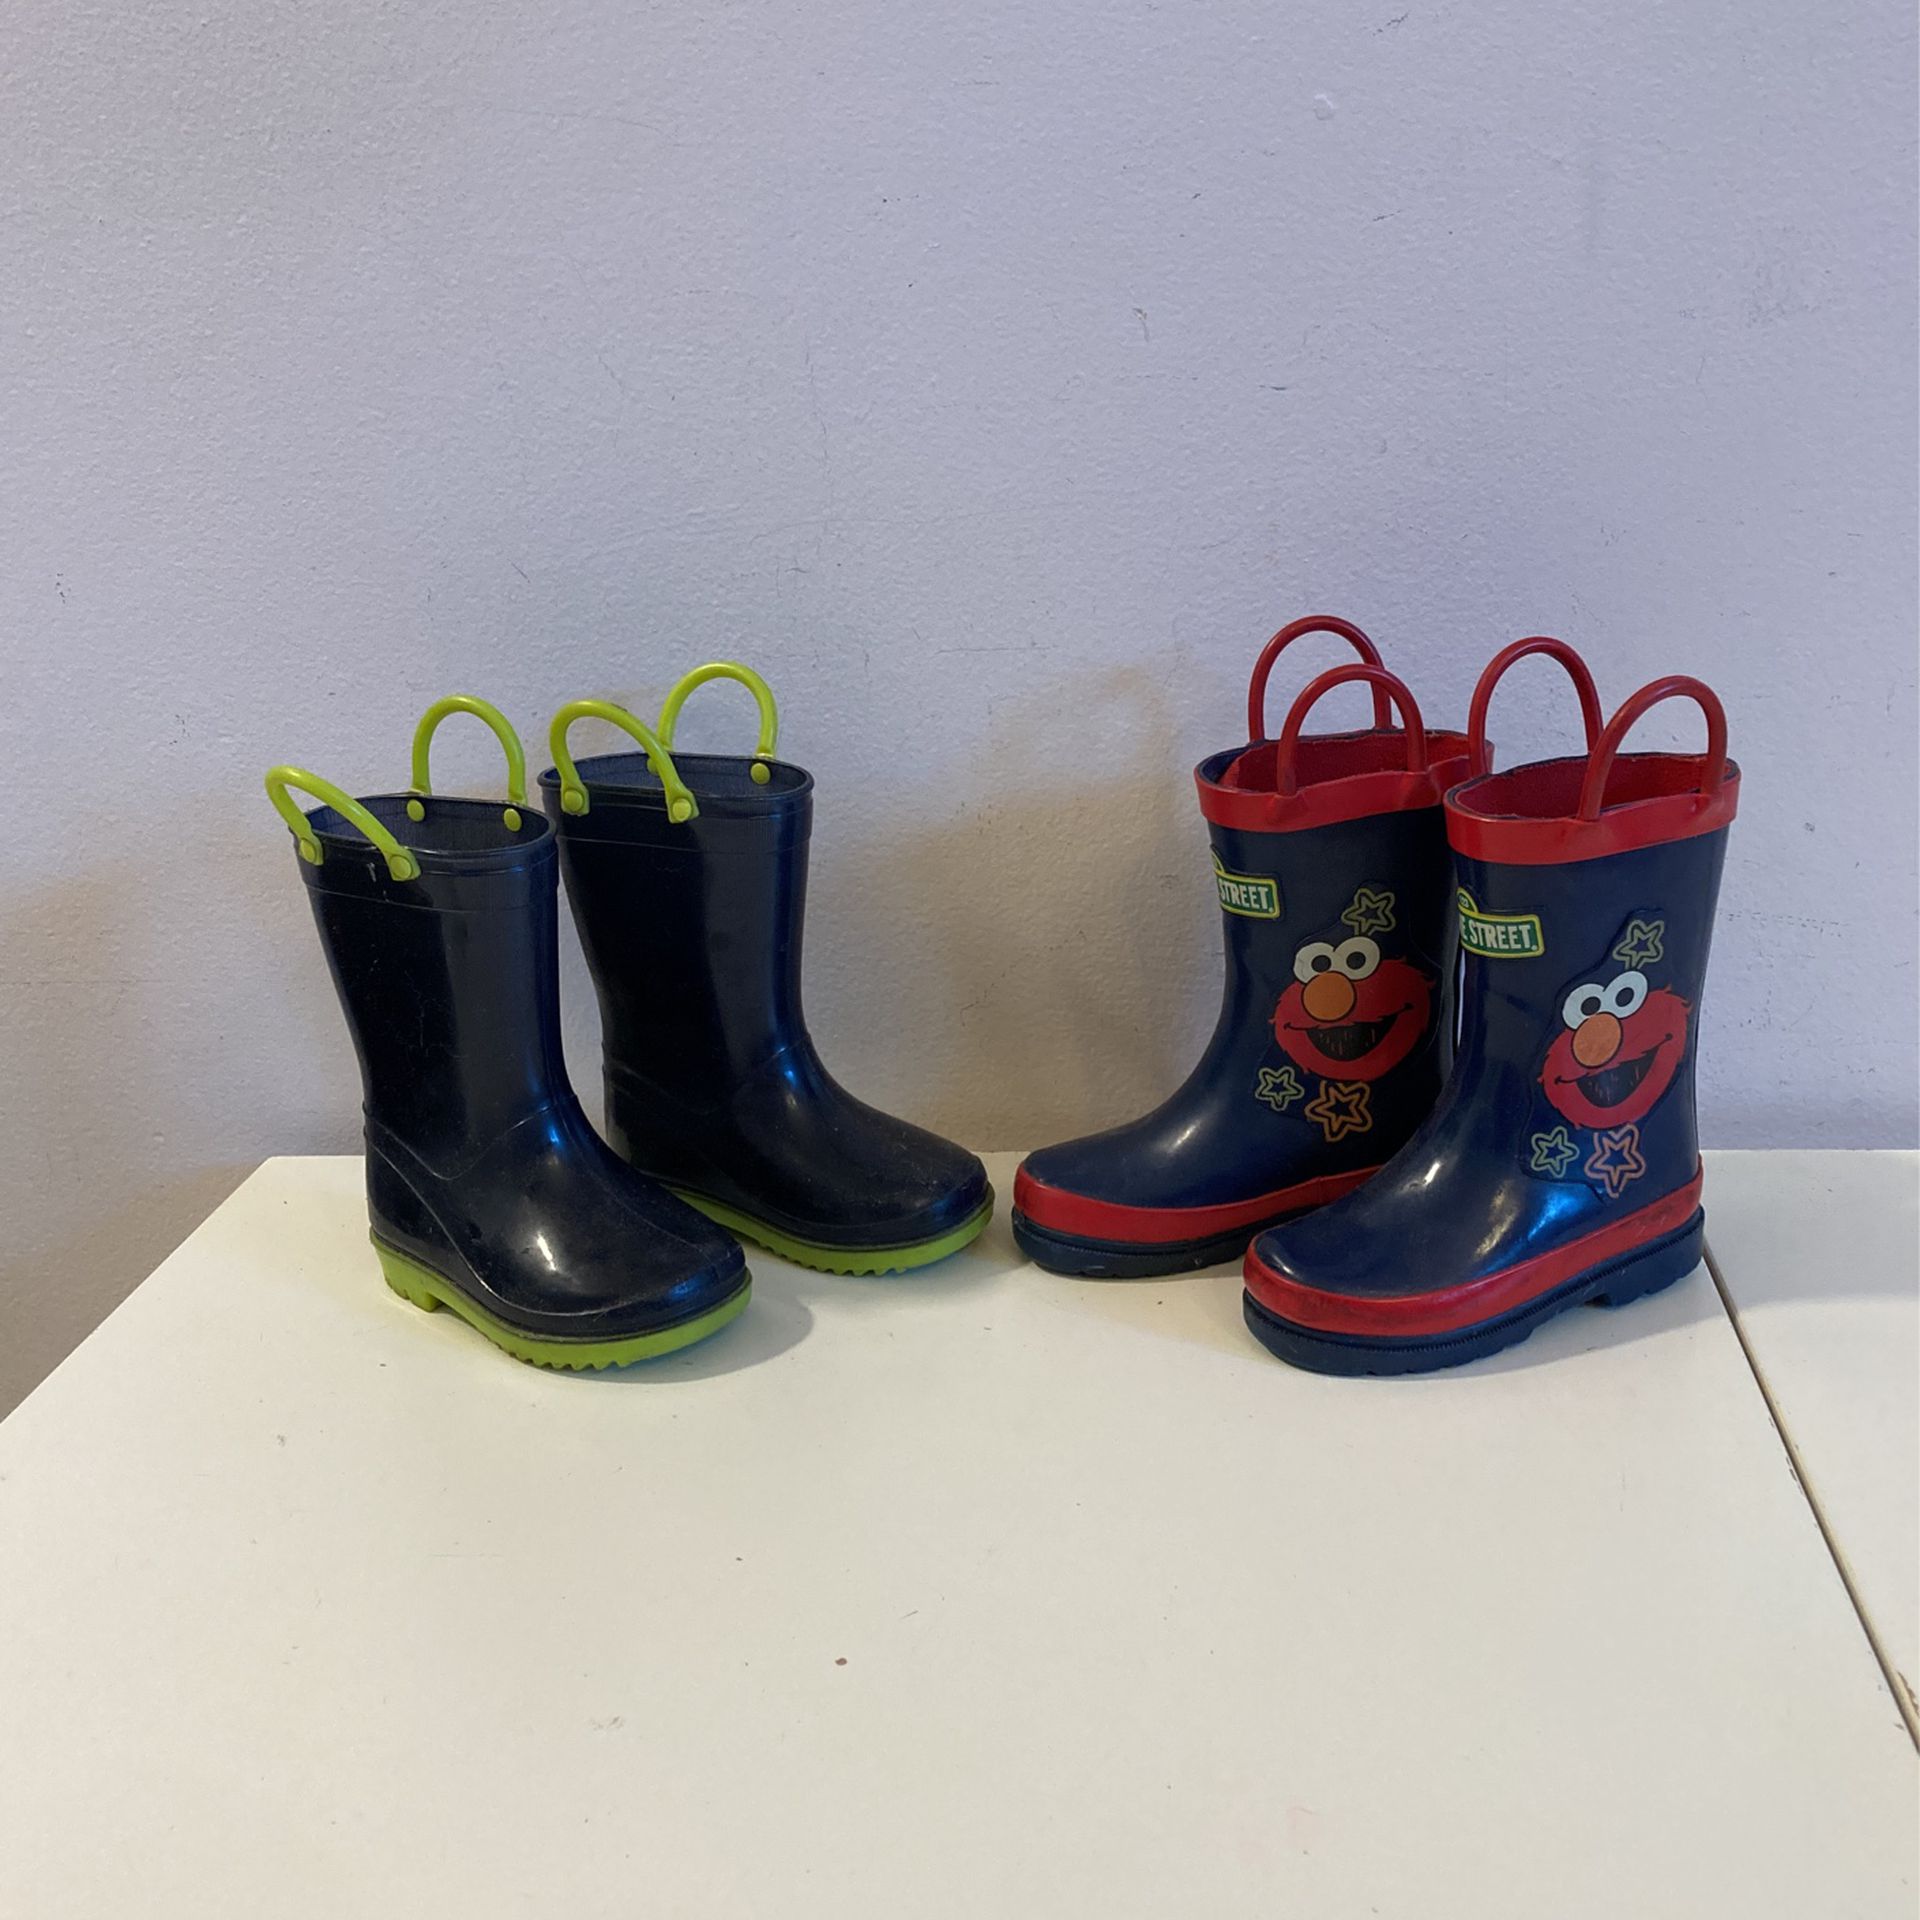 Children’s rain boots **$7 per pair** Description & Sizes Below ⬇️